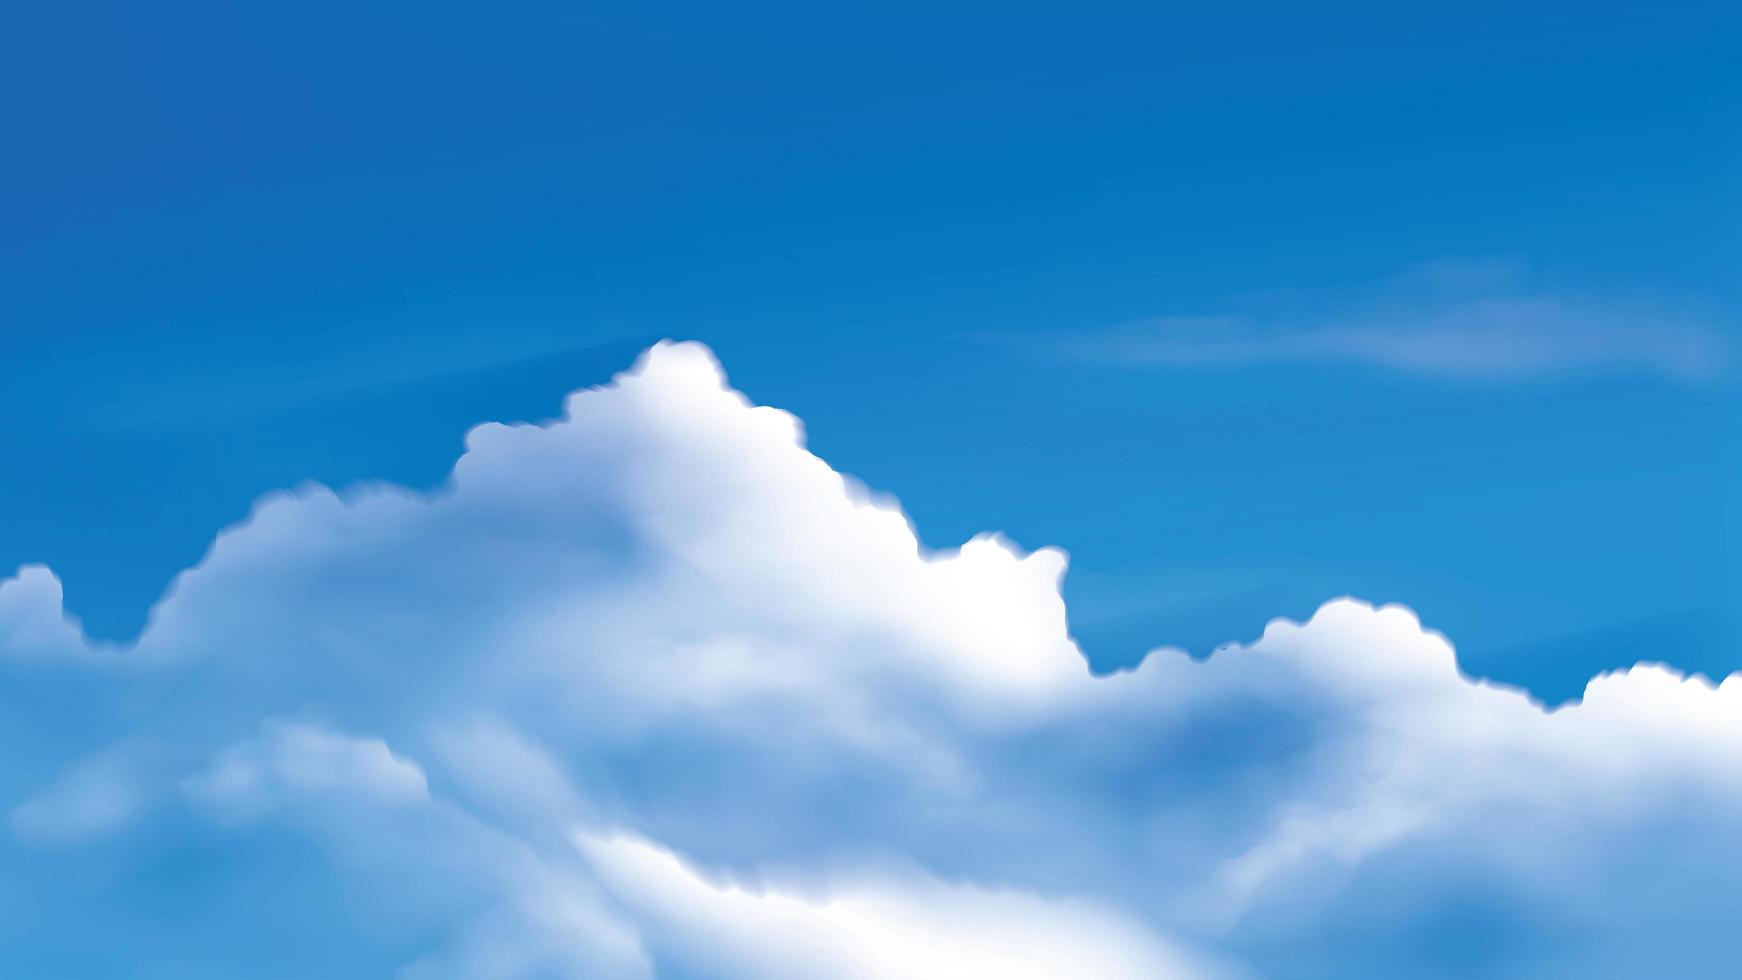 Cumuluswolken am strahlend blauen Himmel vektor